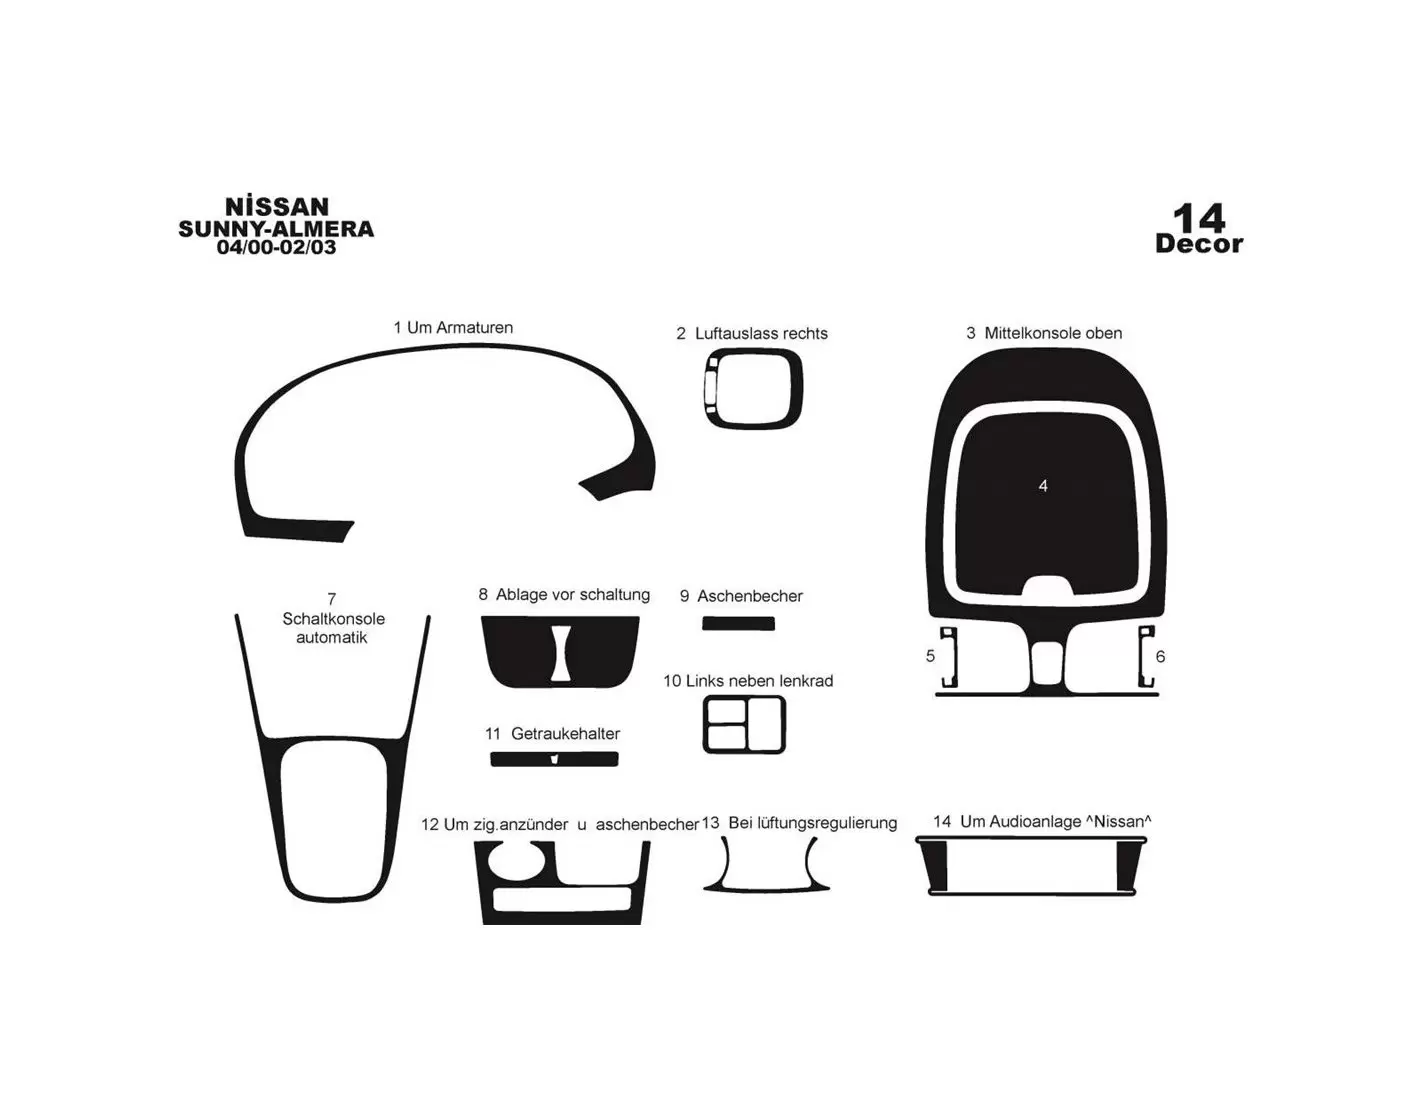 Nissan Sunny - Almera Arabian 04.00 - 02.03 Kit Rivestimento Cruscotto all'interno del veicolo Cruscotti personalizzati 14-Decor